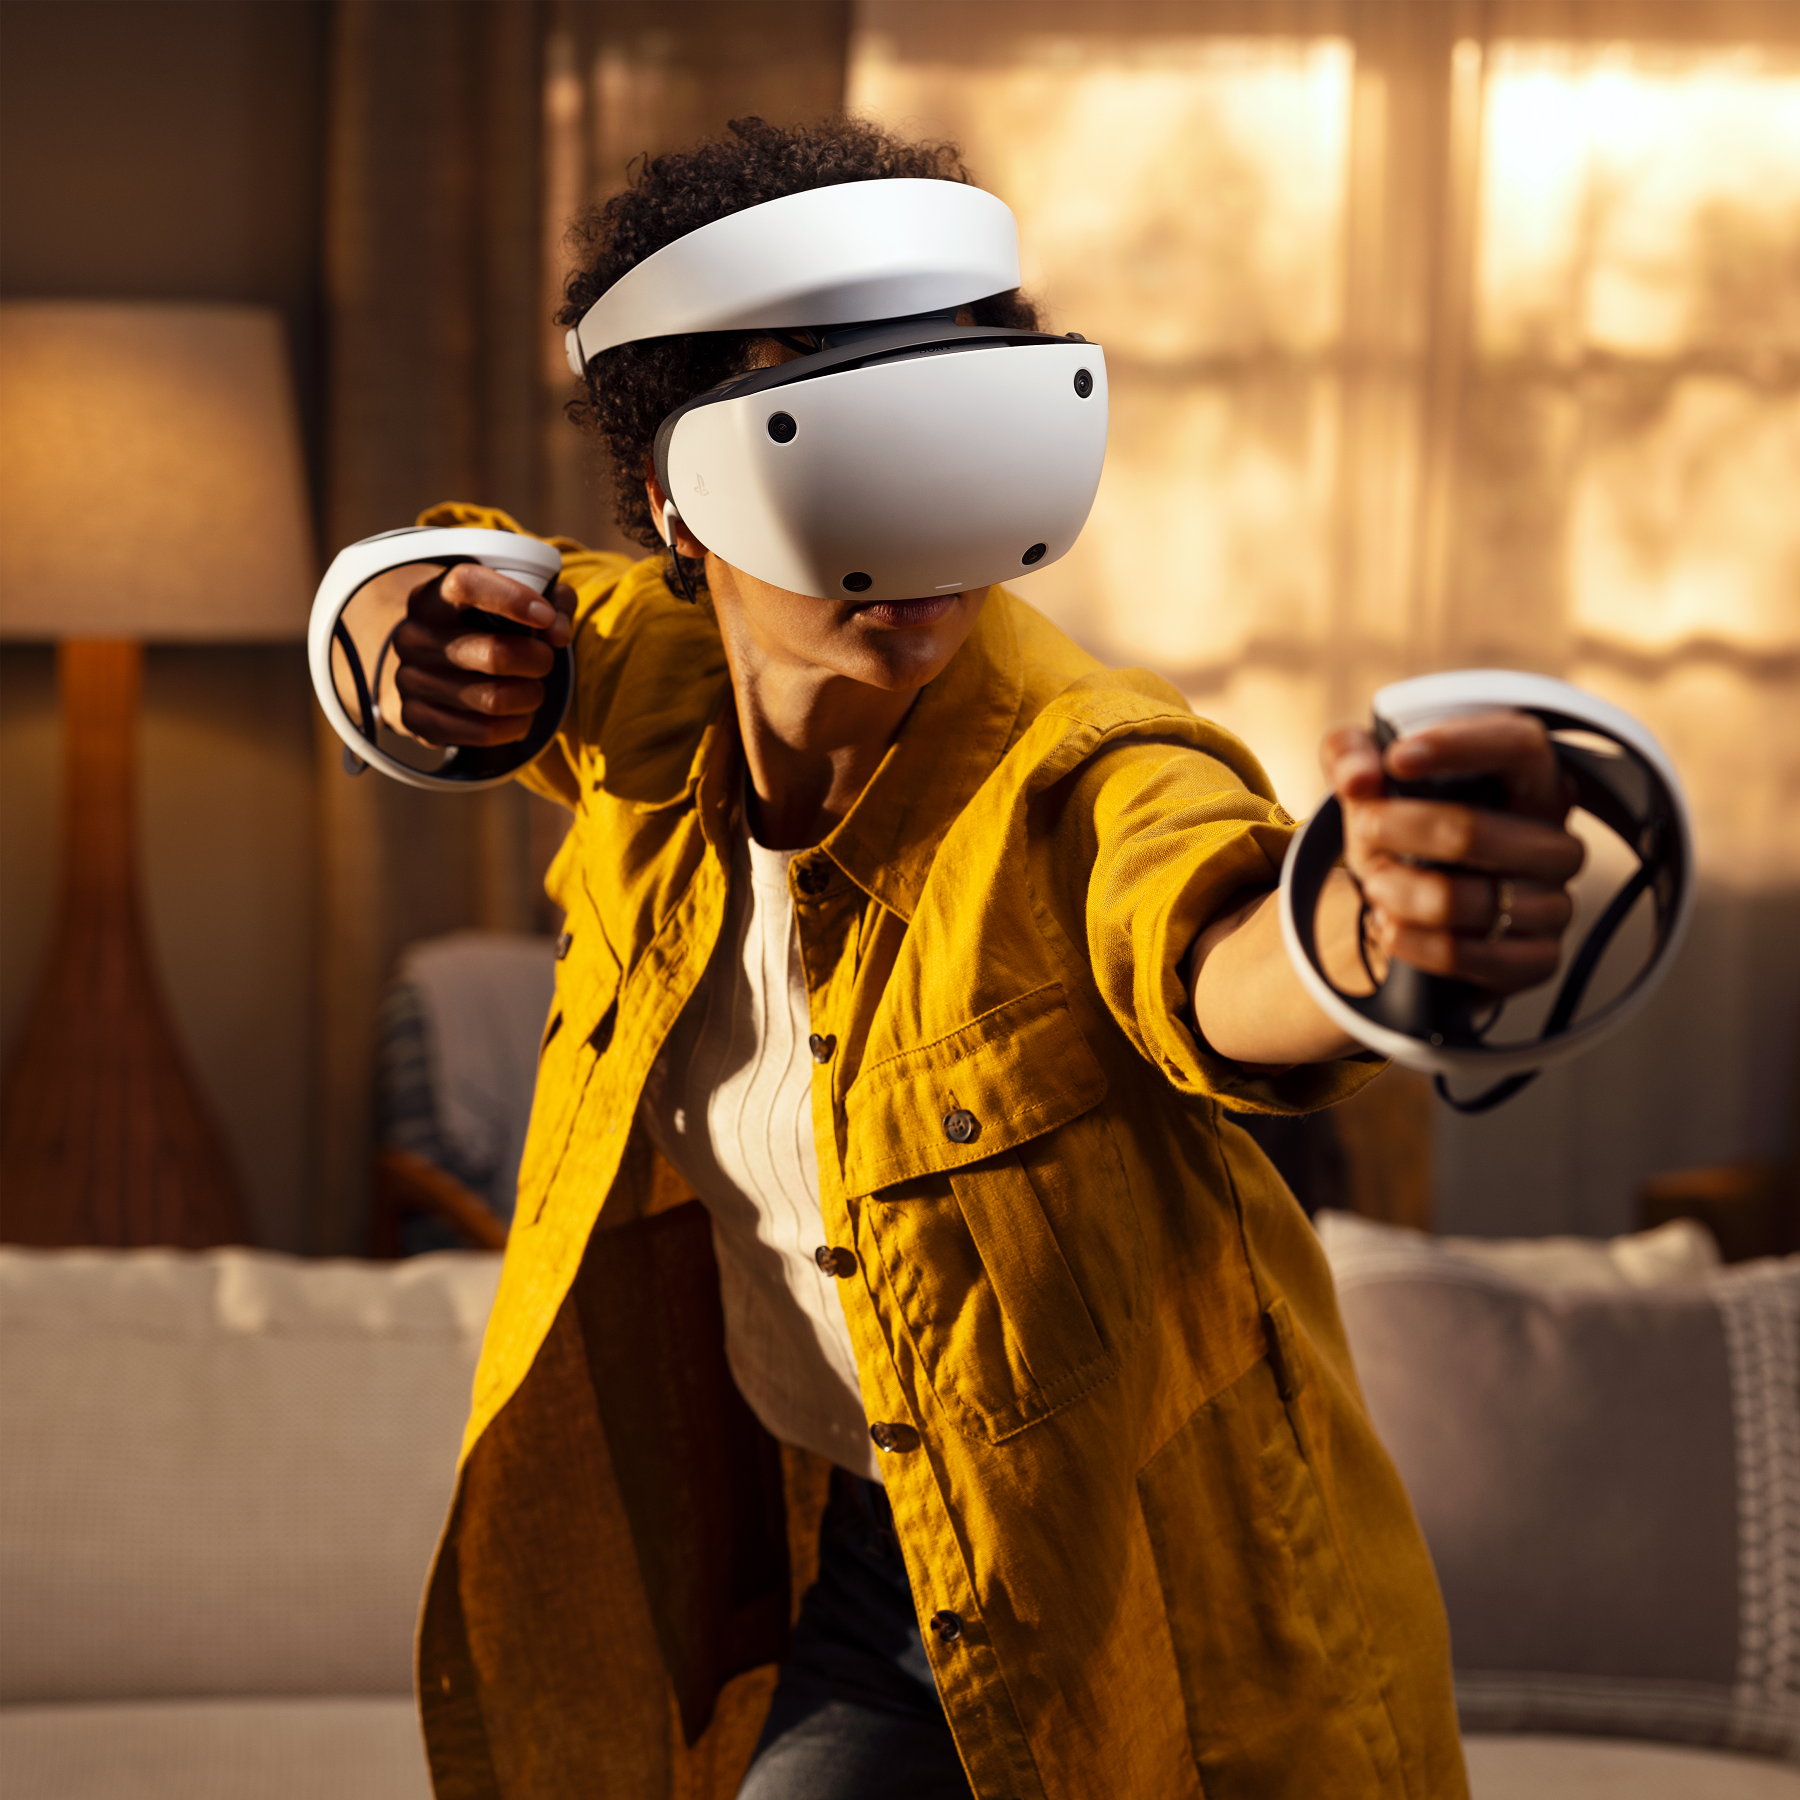 מארז PlayStation VR2